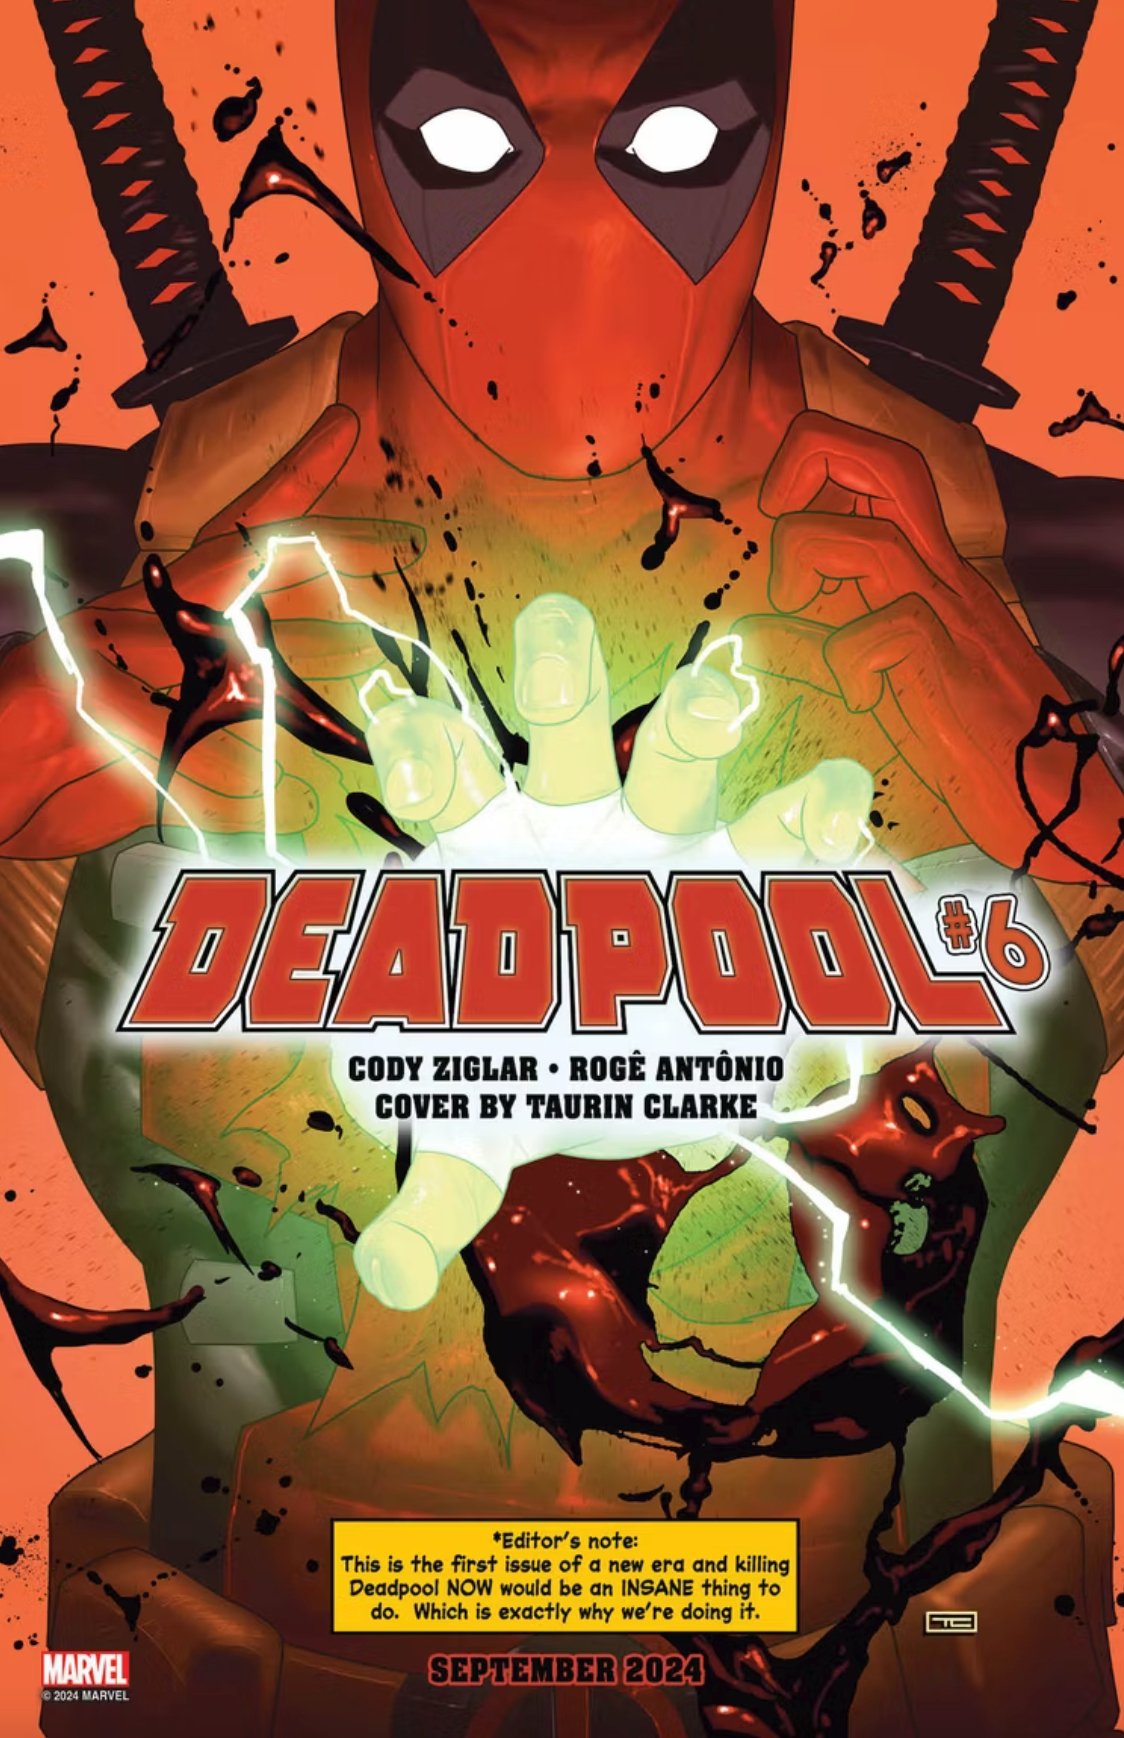 Deadpool #6 kills deadpool